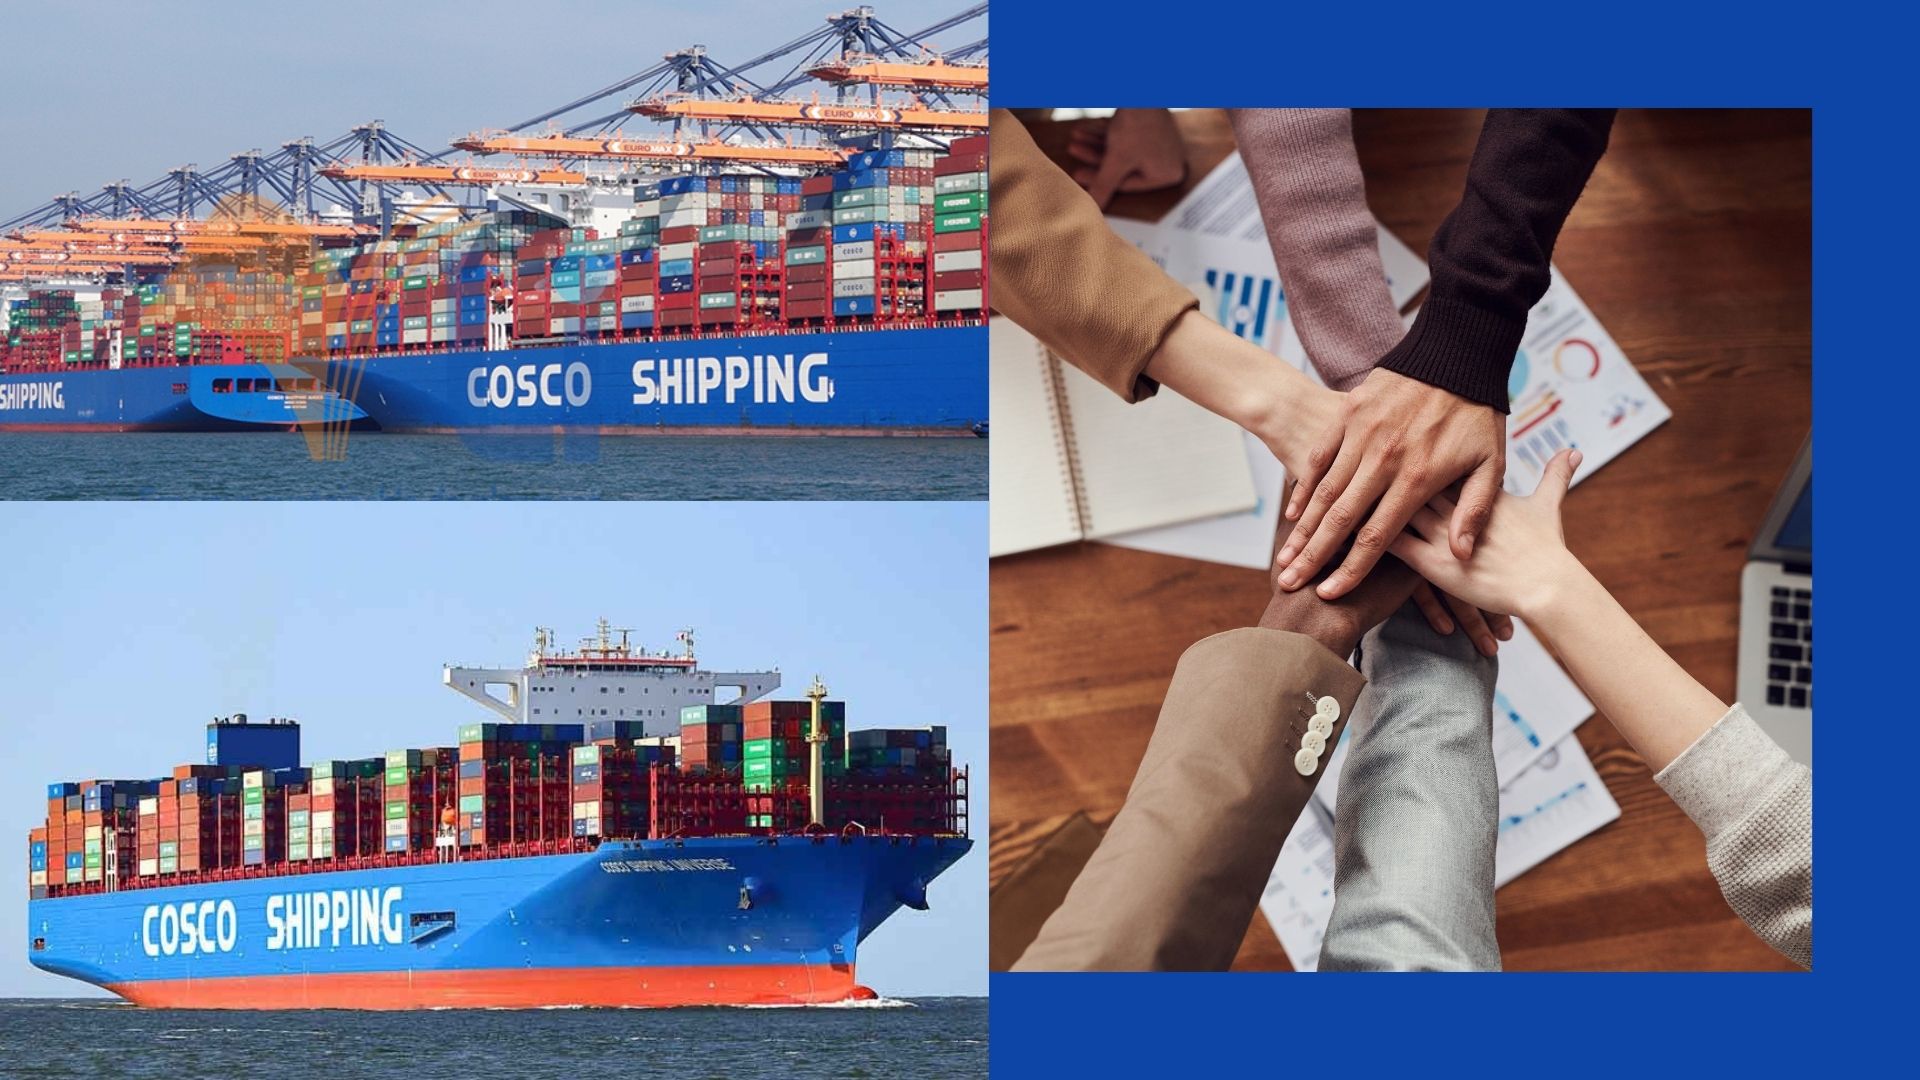 hãng tàu cosco shipping thứ 3 trong top 15 hãng tàu lớn nhất thế giới